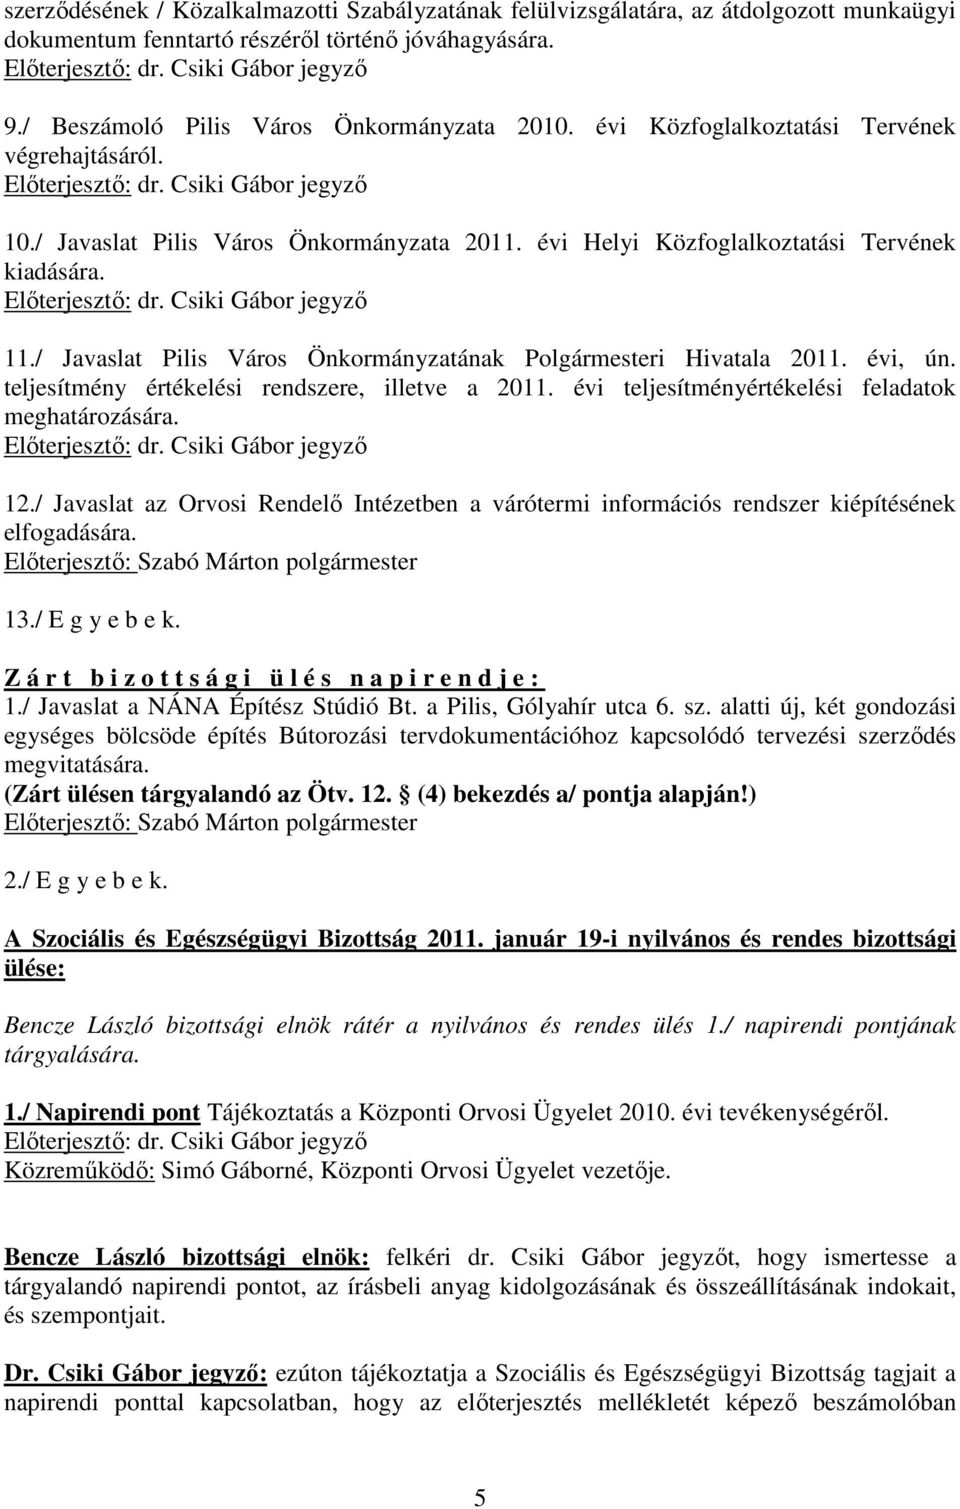 / Javaslat Pilis Város Önkormányzatának Polgármesteri Hivatala 2011. évi, ún. teljesítmény értékelési rendszere, illetve a 2011. évi teljesítményértékelési feladatok meghatározására. 12.